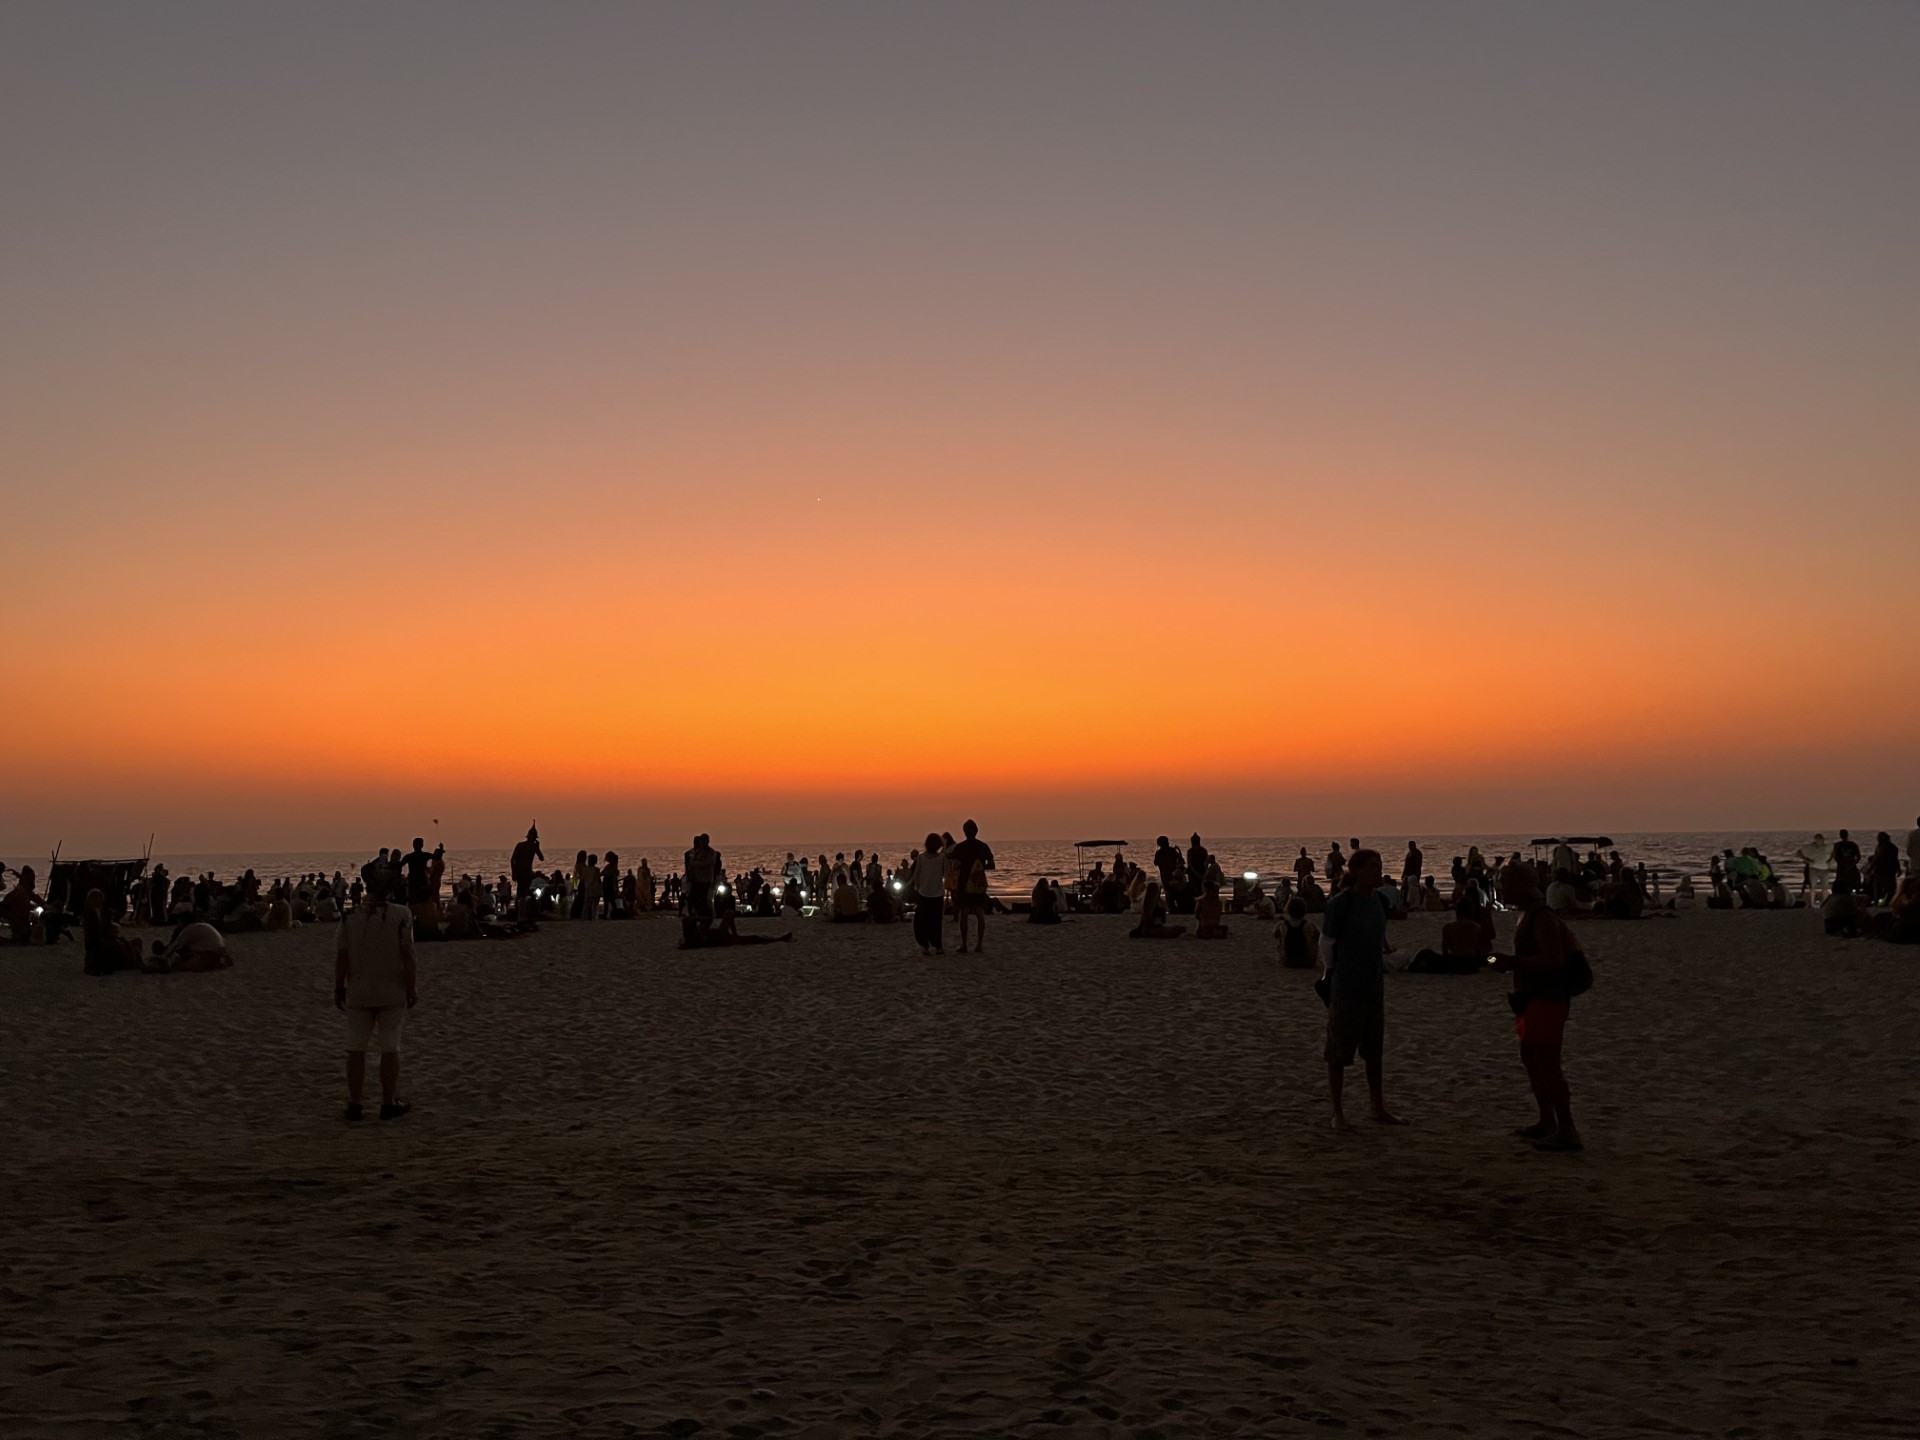 a sunset over the beach